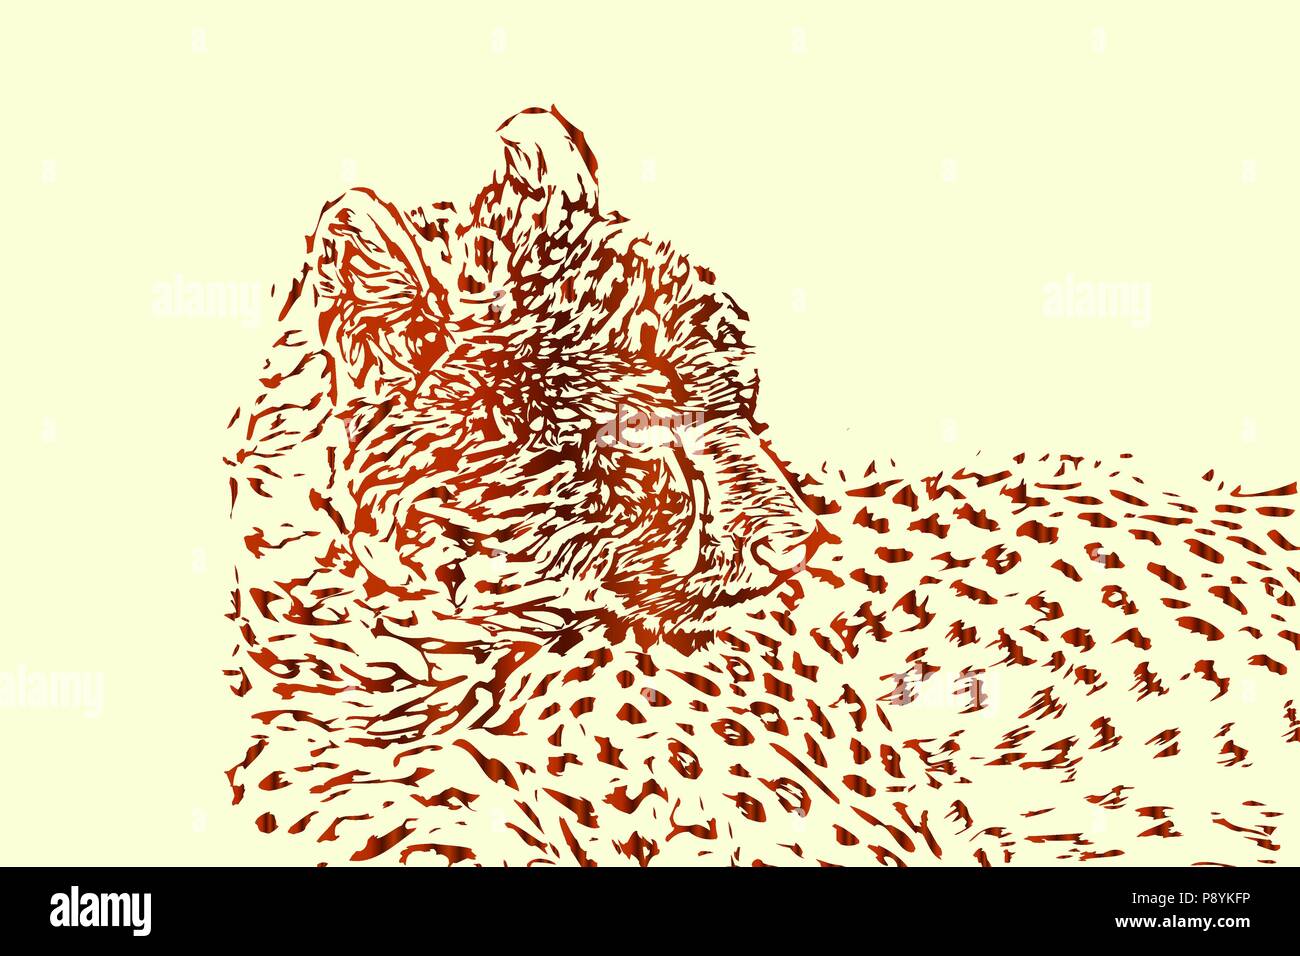 Cheetah vektor Skizze oder Zeichnung, abstrakte wildlife Hintergrund Abbildung. Stock Vektor